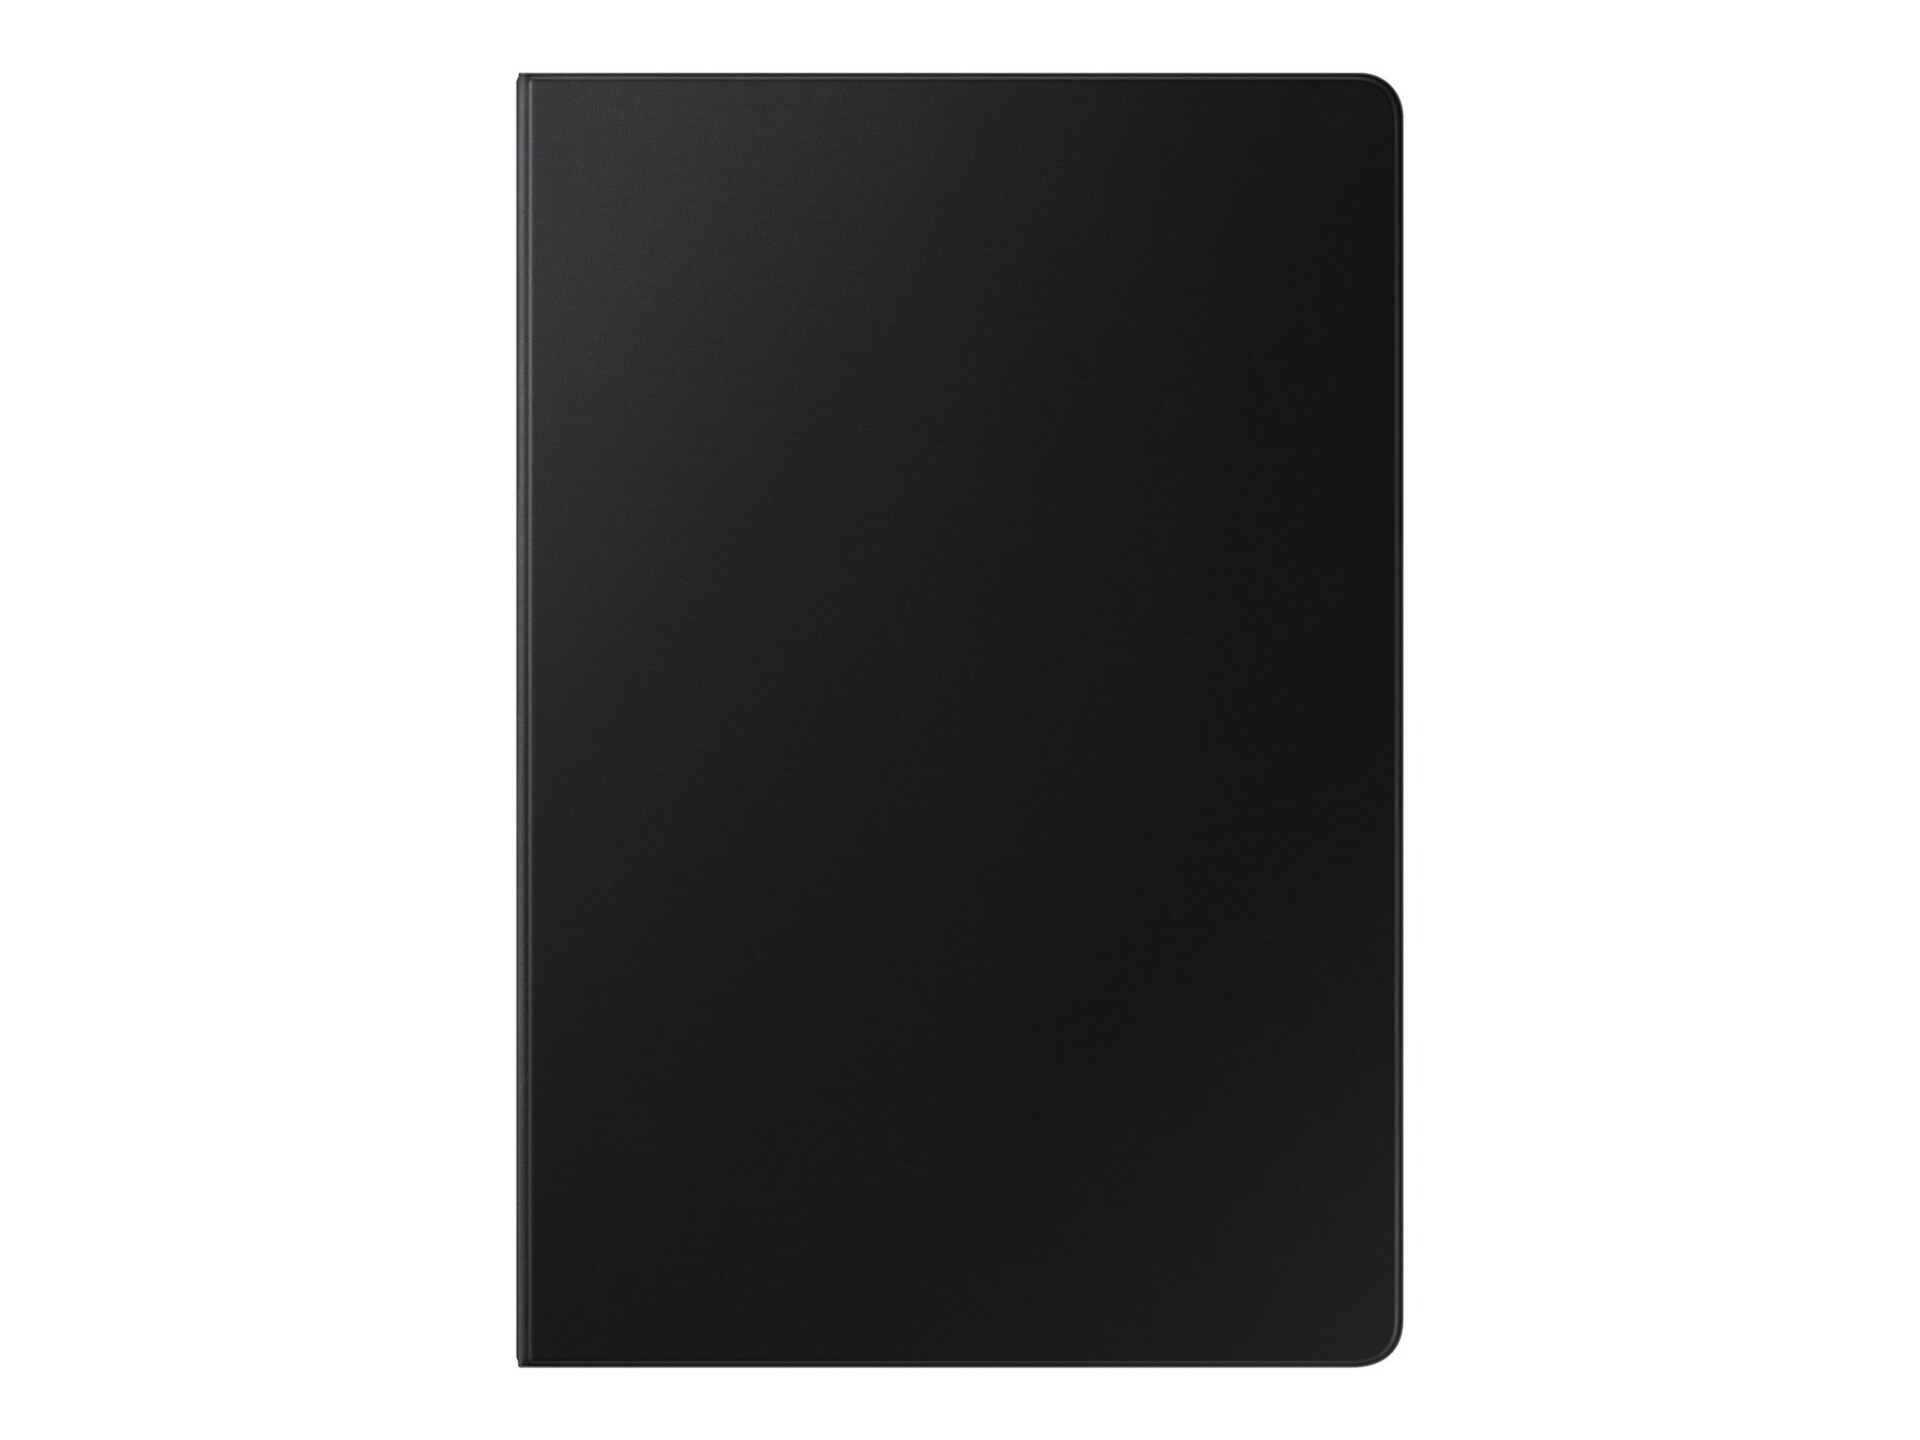 Samsung EF-BT730 - flip cover for tablet